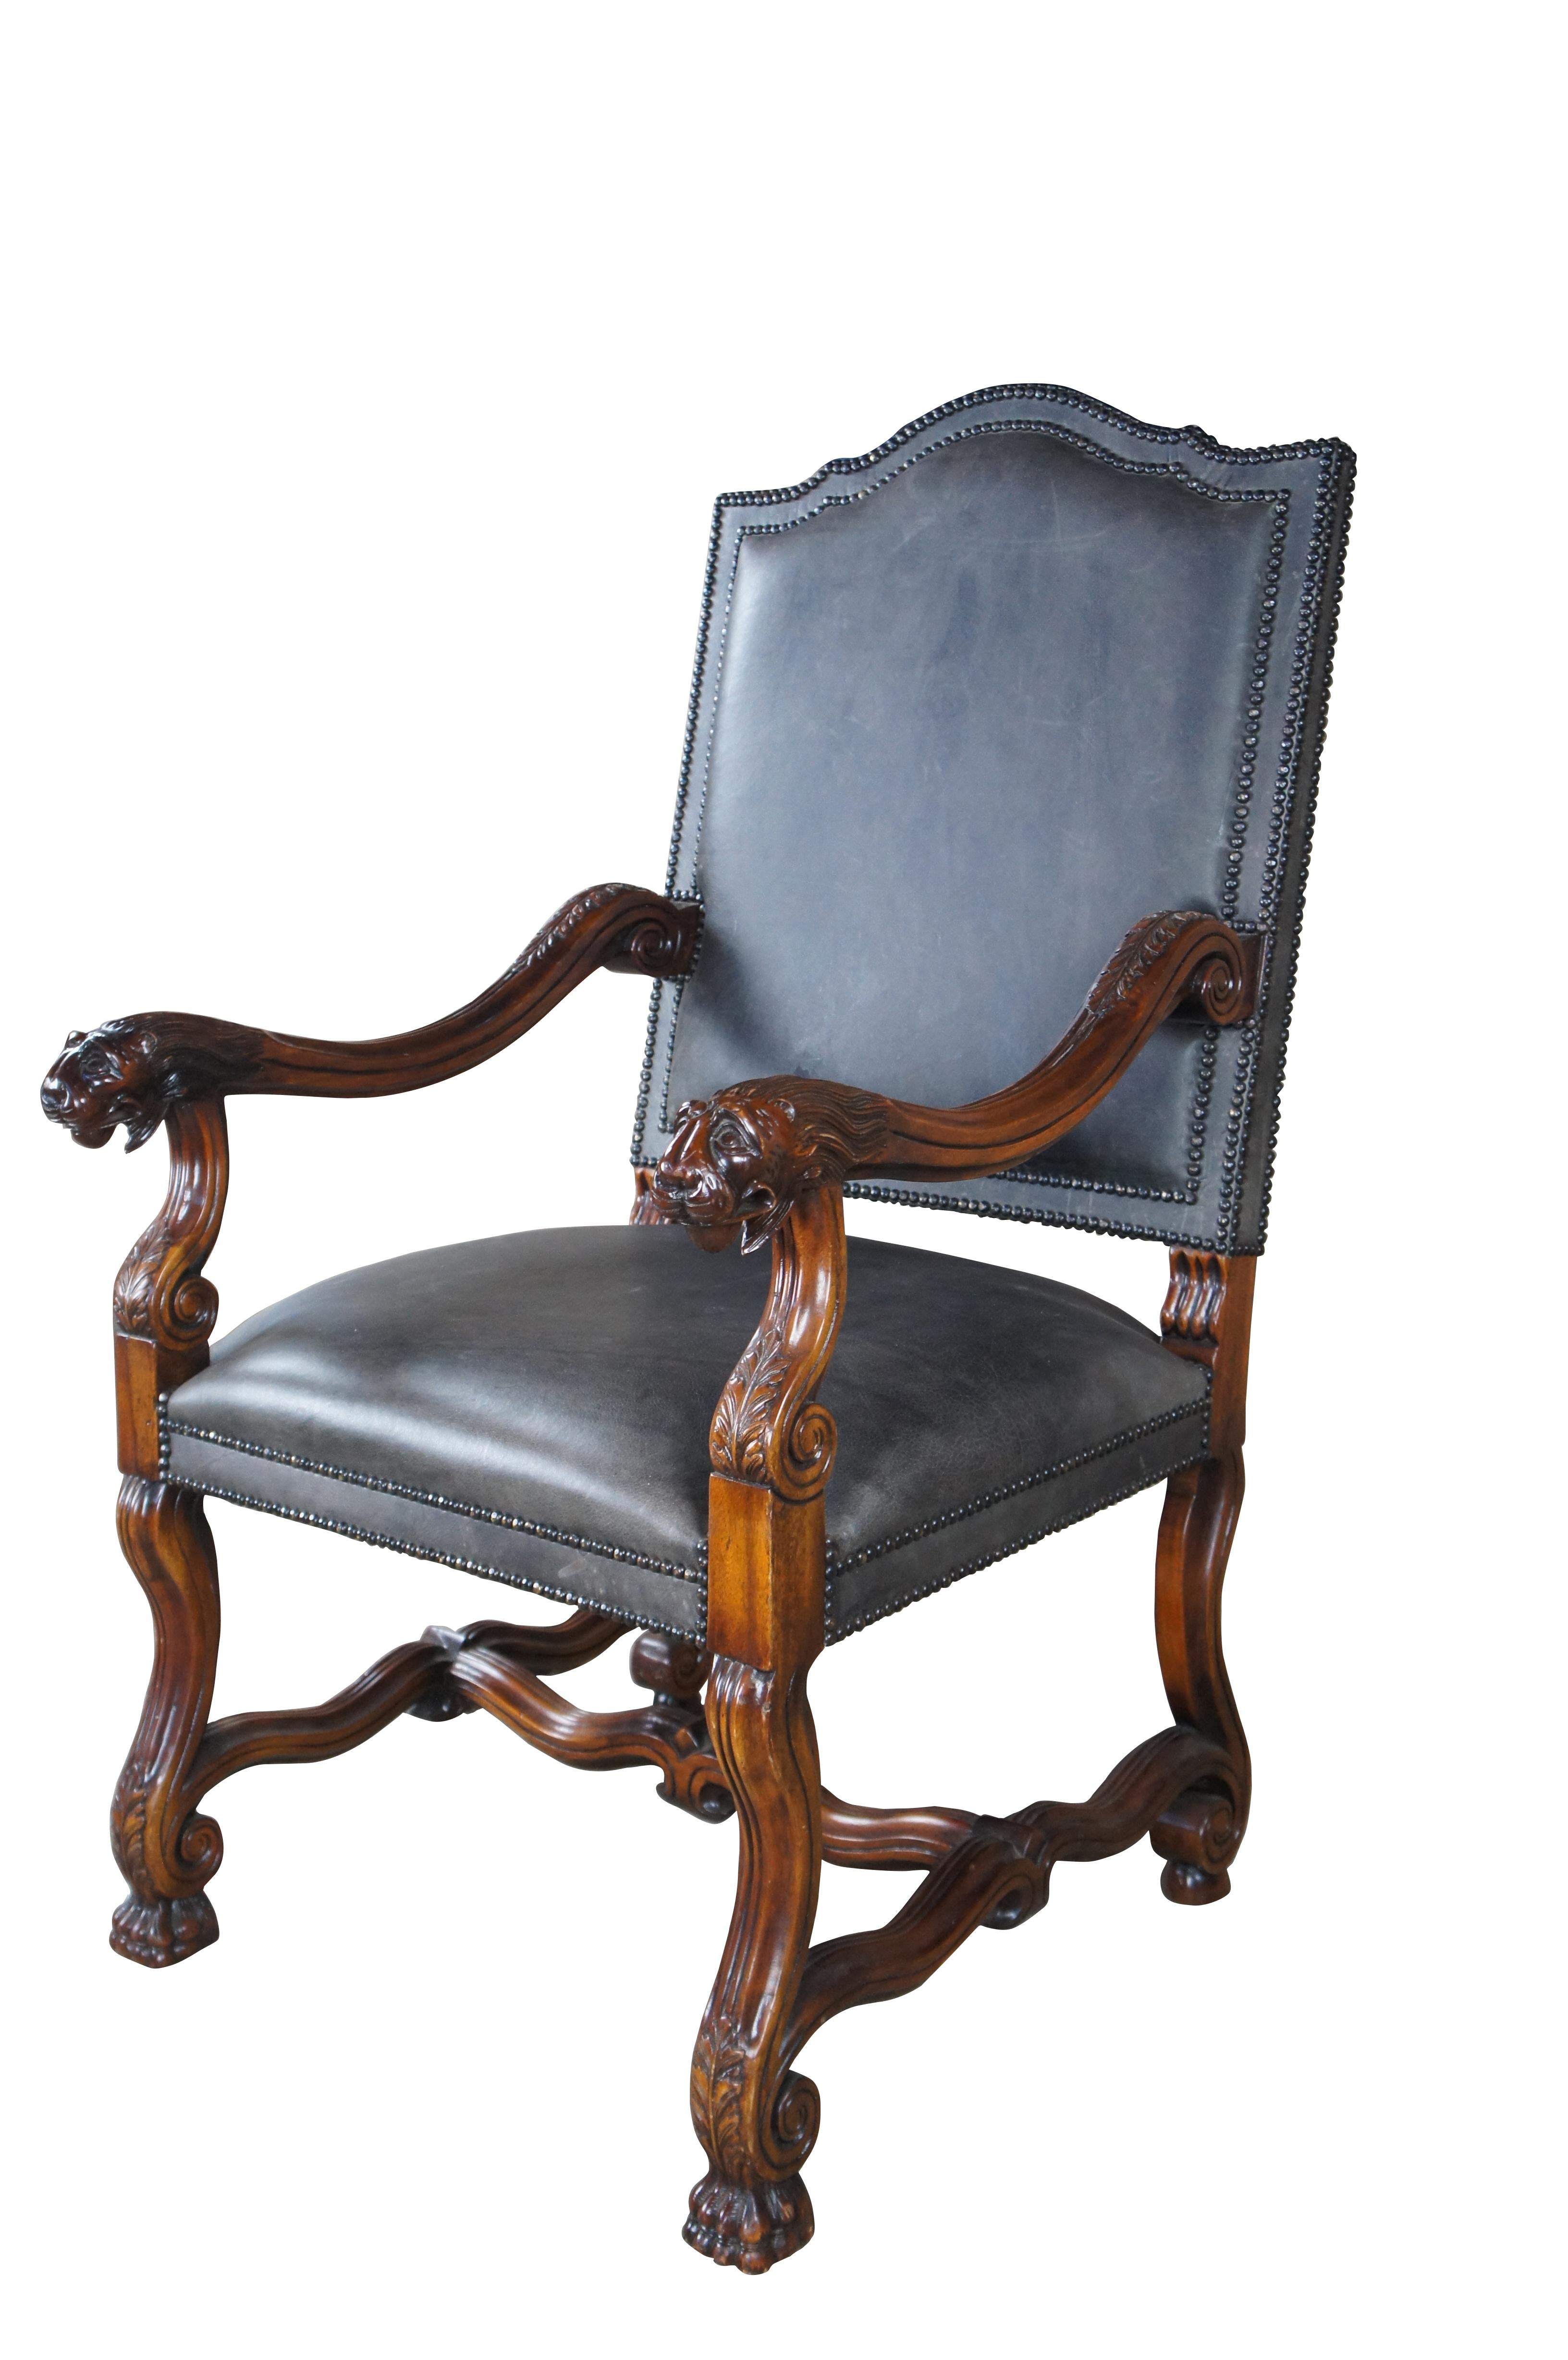 Exquise chaise à trône de Theodore Alexander, vers la fin du 20e siècle. Inspiré des designs italiens toscans et espagnols du XVIIe siècle. La structure est en acajou, le dossier est haut et le cimier est profilé. Les bras sculptés d'acanthes sont